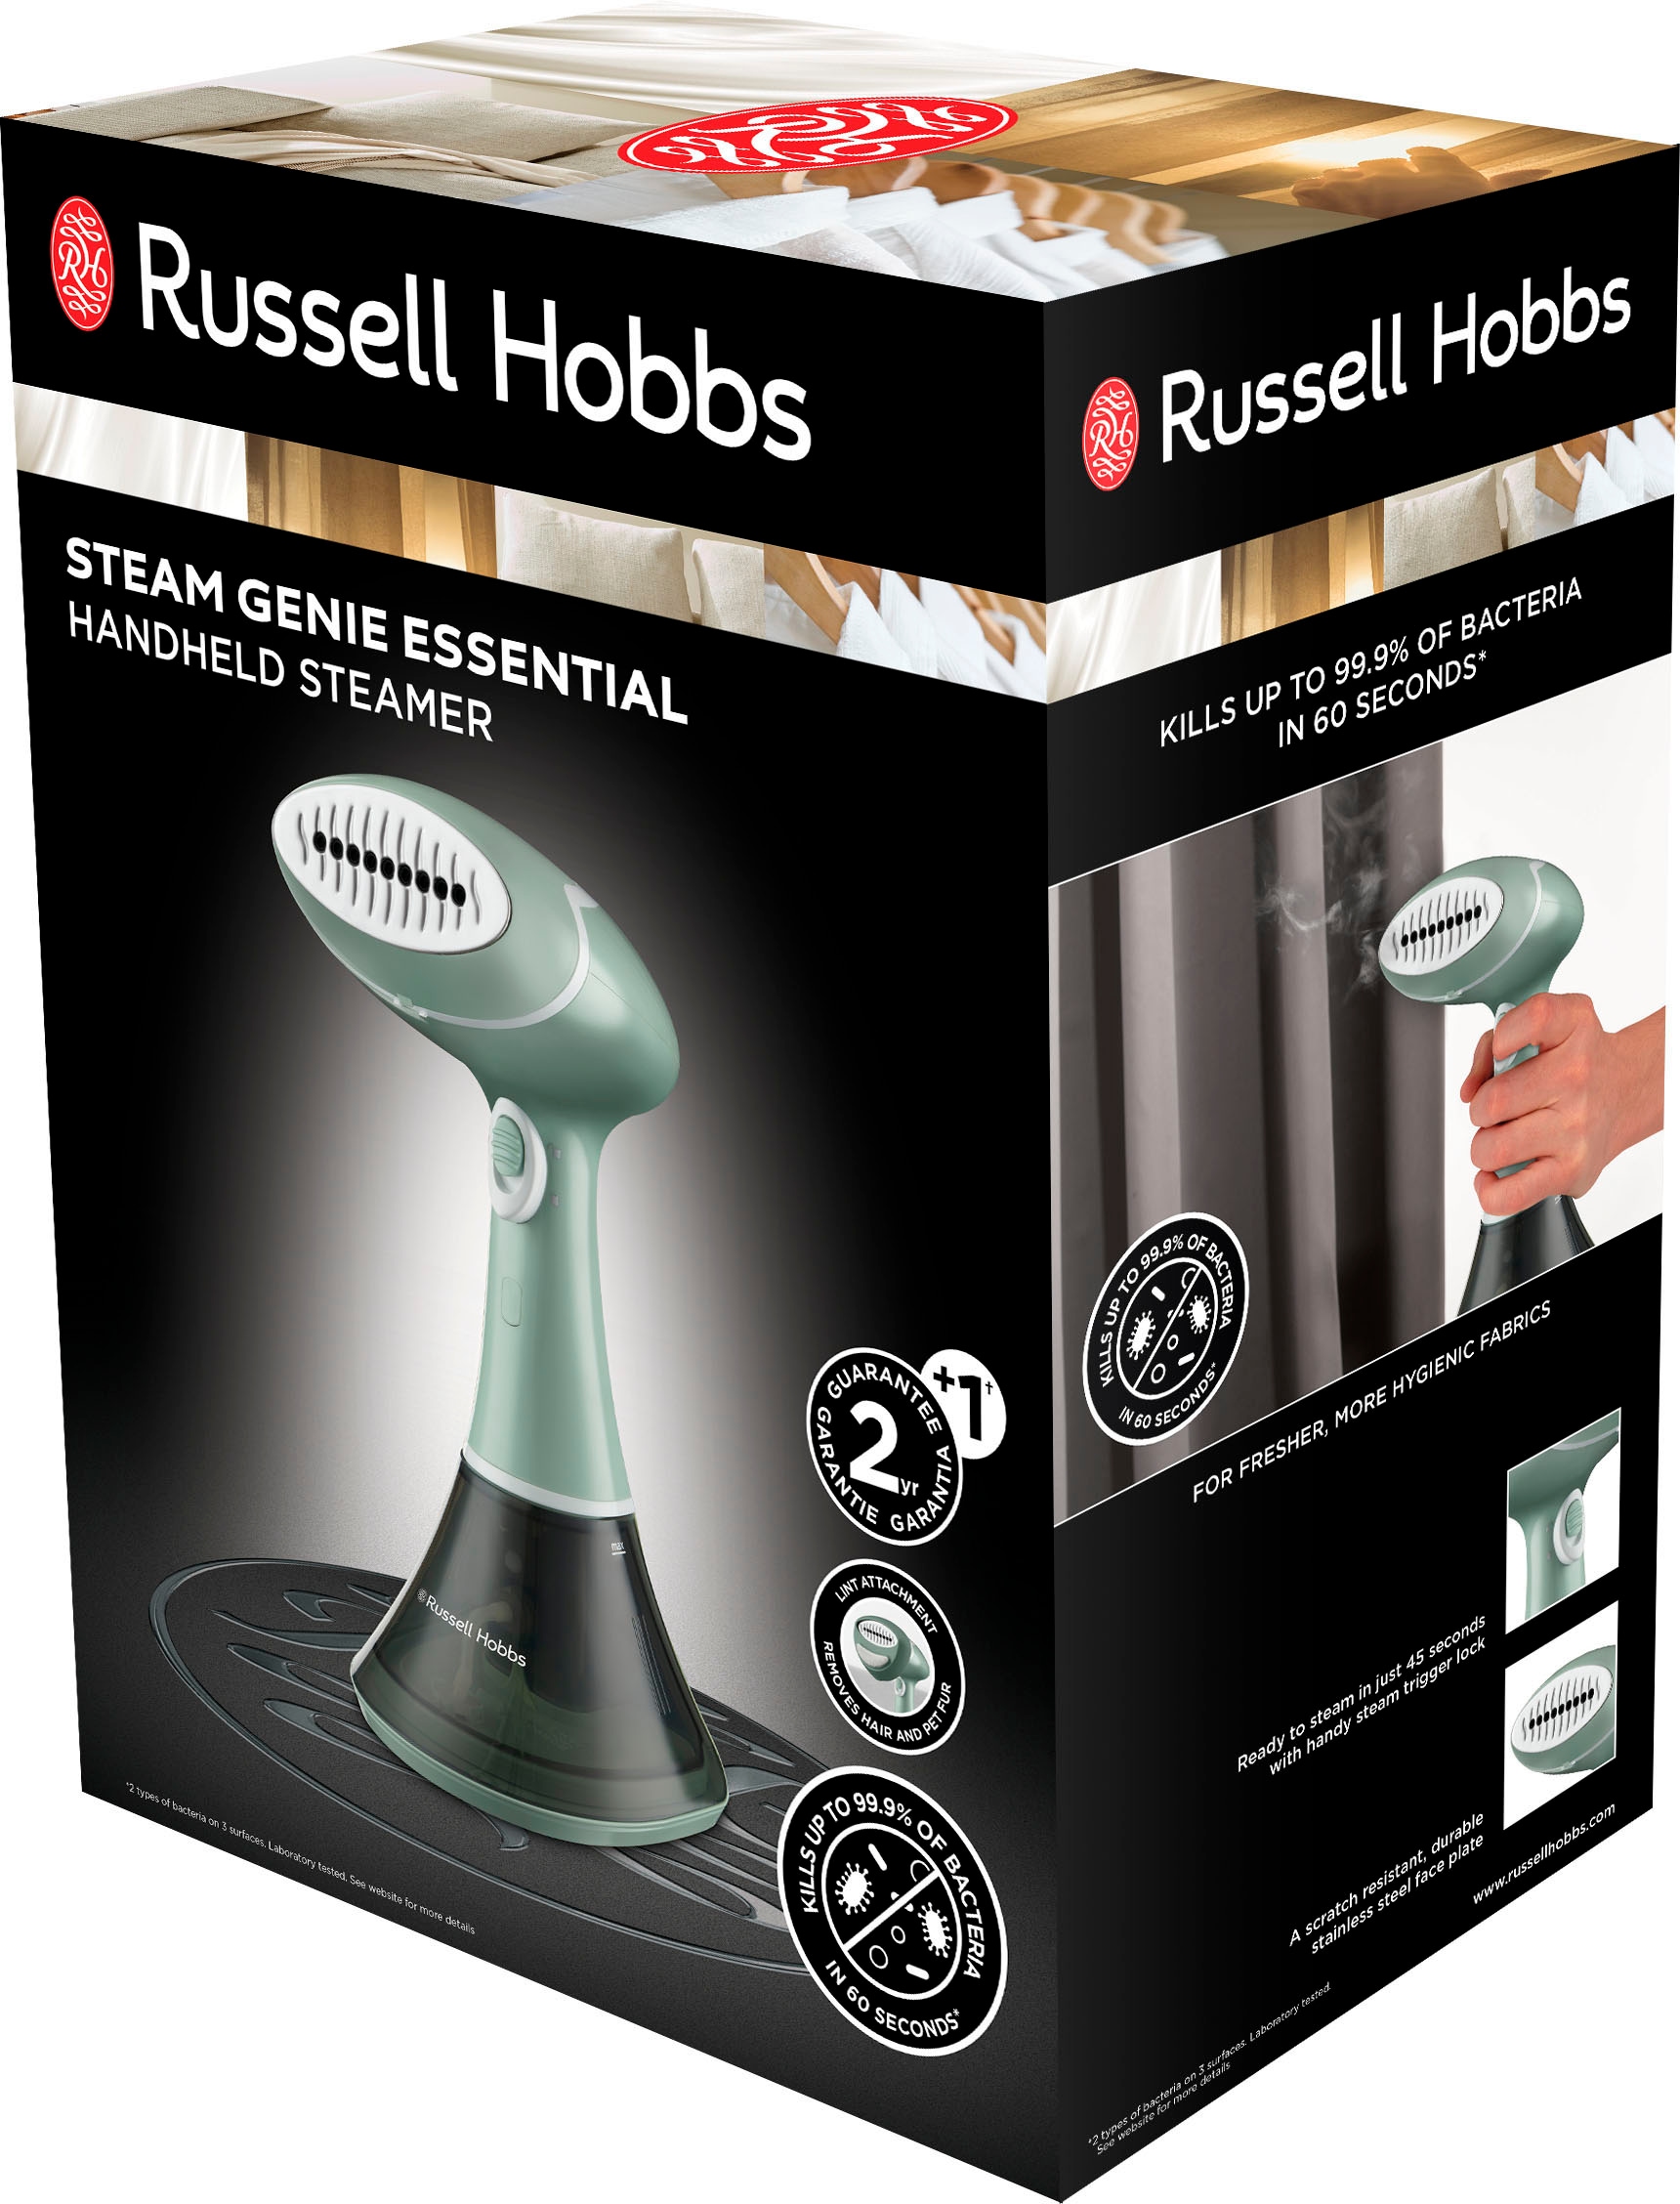 RUSSELL HOBBS Dampfbürste »Steam Genie Essential«, 1600 W, kein Bügeleisen oder Bügelbrett erforderlich